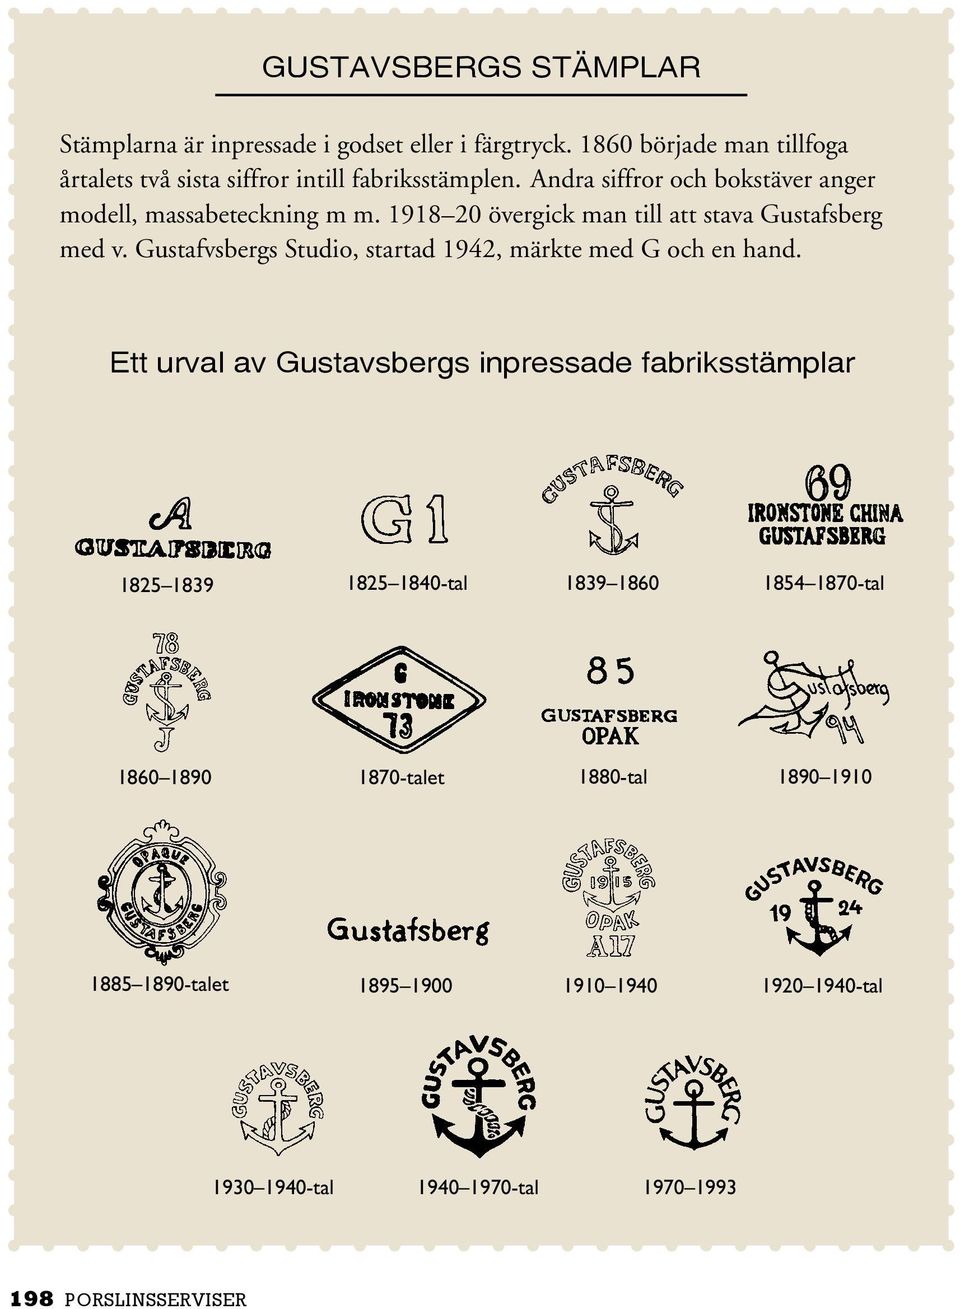 1918 20 övergick man till att stava Gustafsberg med v. Gustafvsbergs Studio, startad 1942, märkte med G och en hand.